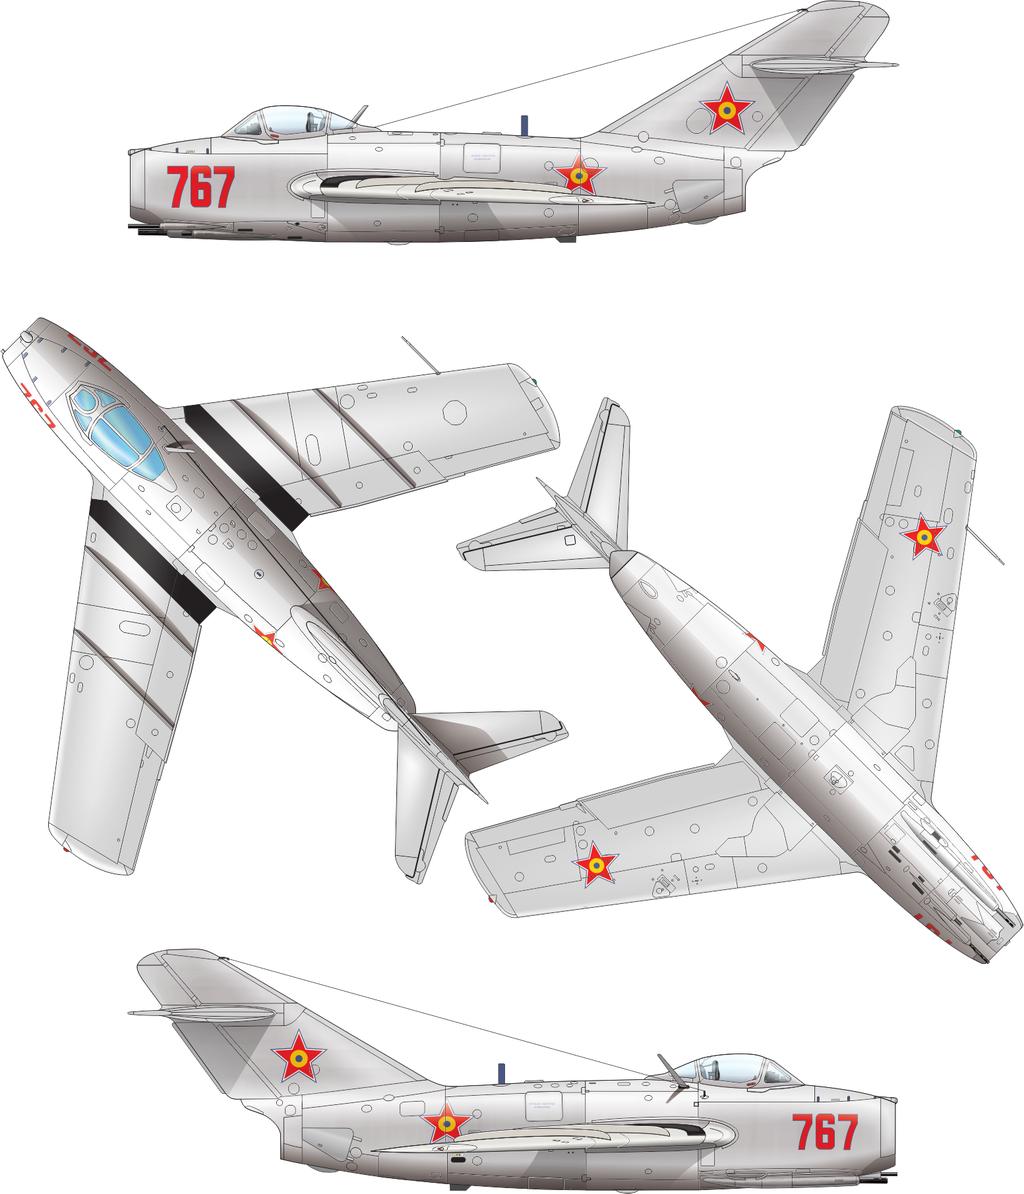 E MiG-15, výr. č. 21767, Rumunské letectvo, základna Deveselu, 1962 Rumunské letectvo používalo celkem 204 MiGů-15.